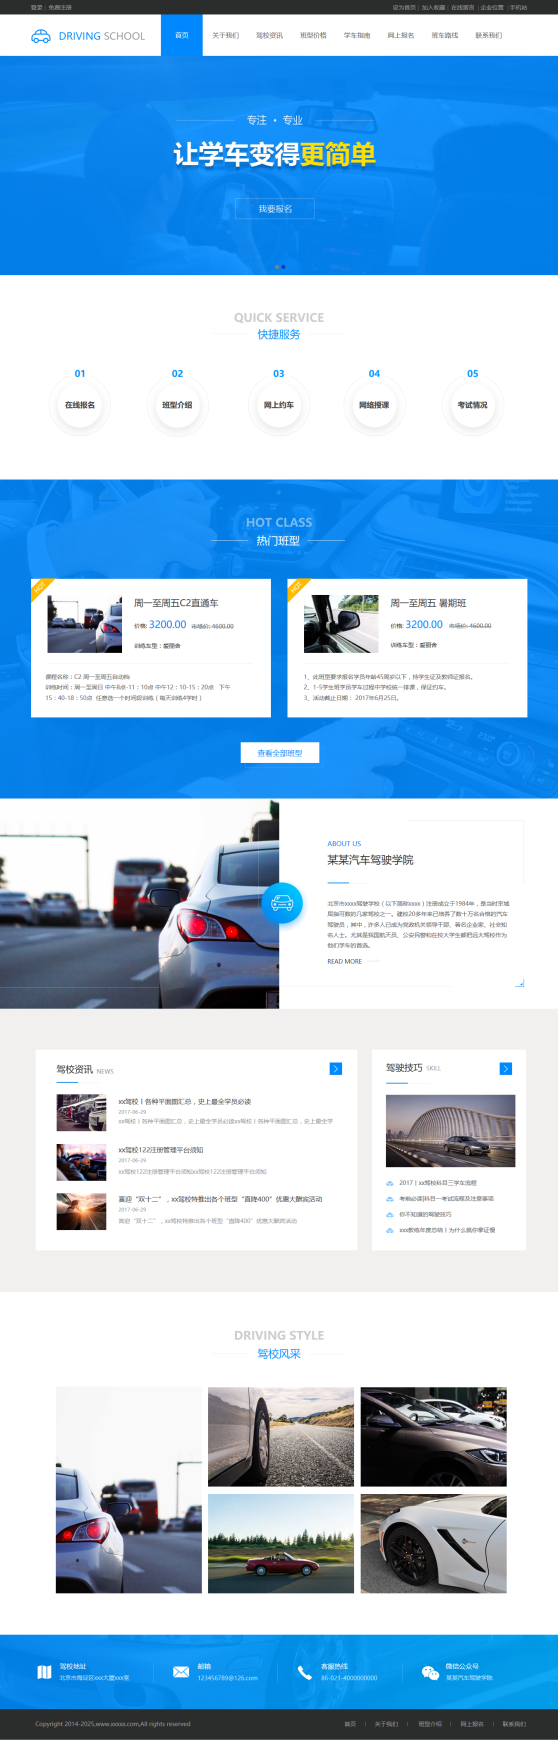 小清新汽车驾校企业网站模板